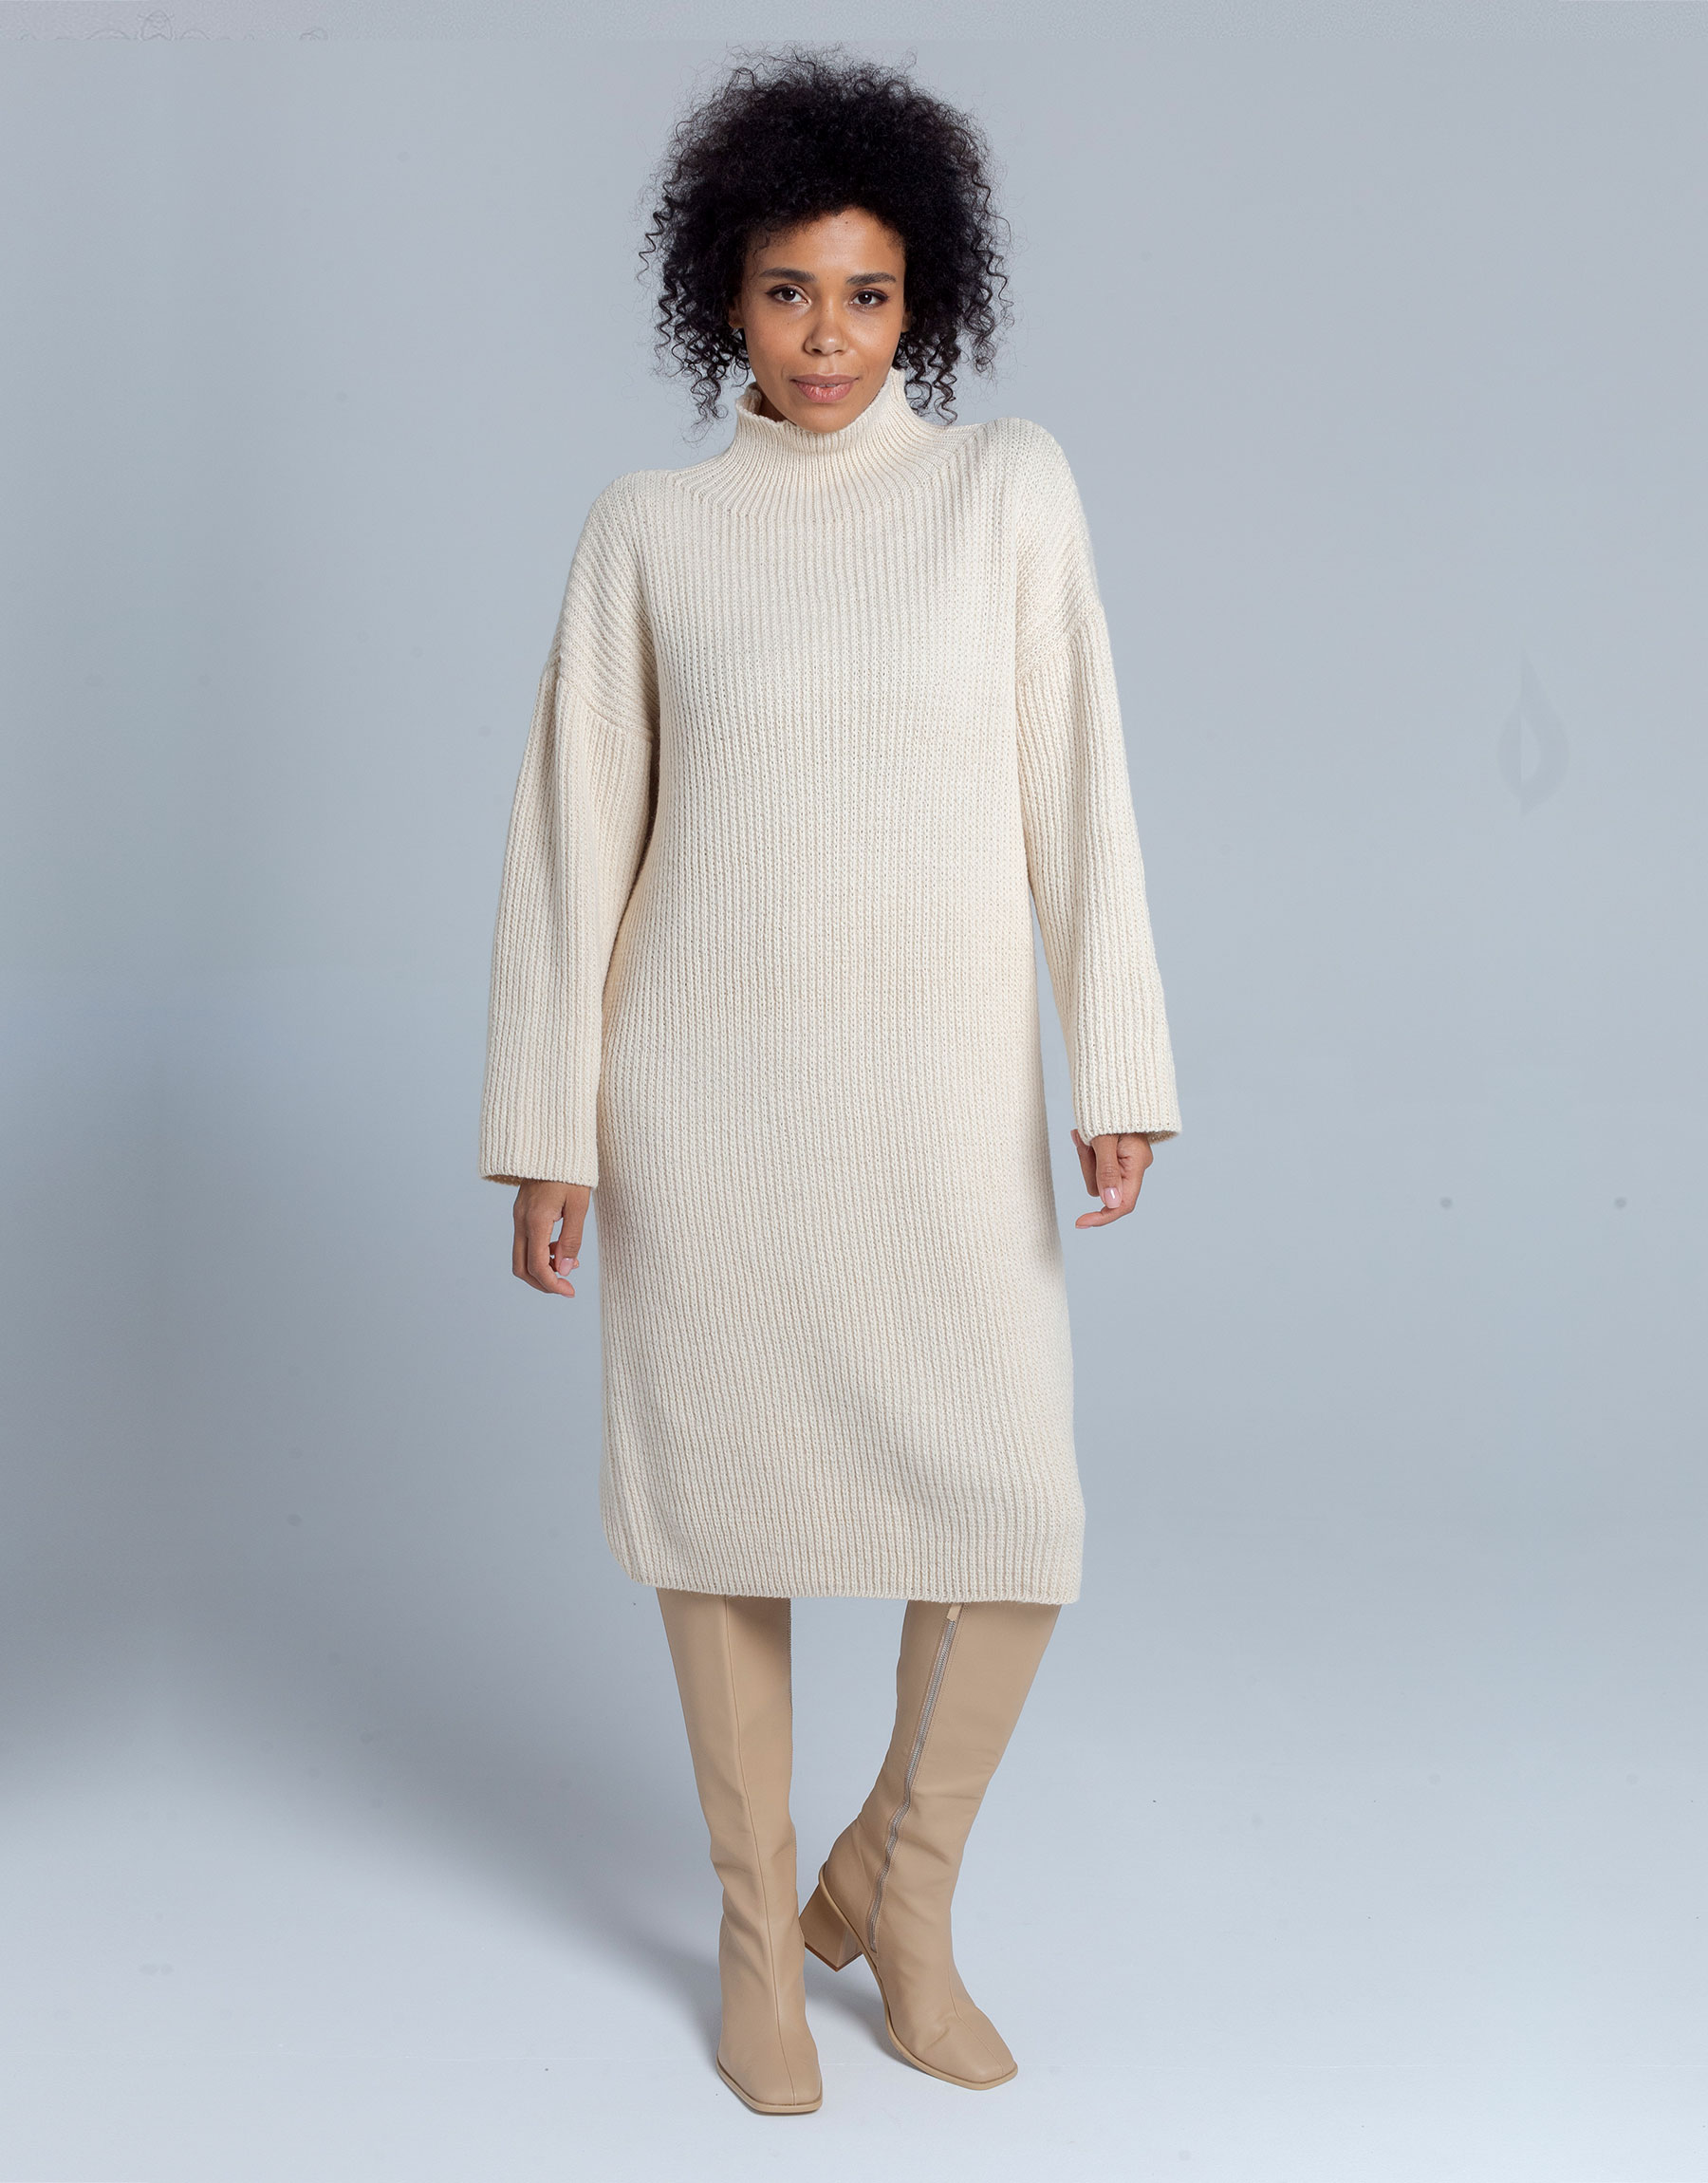 Платье женское Shoppingcore Vi001 белое 46-52 RU